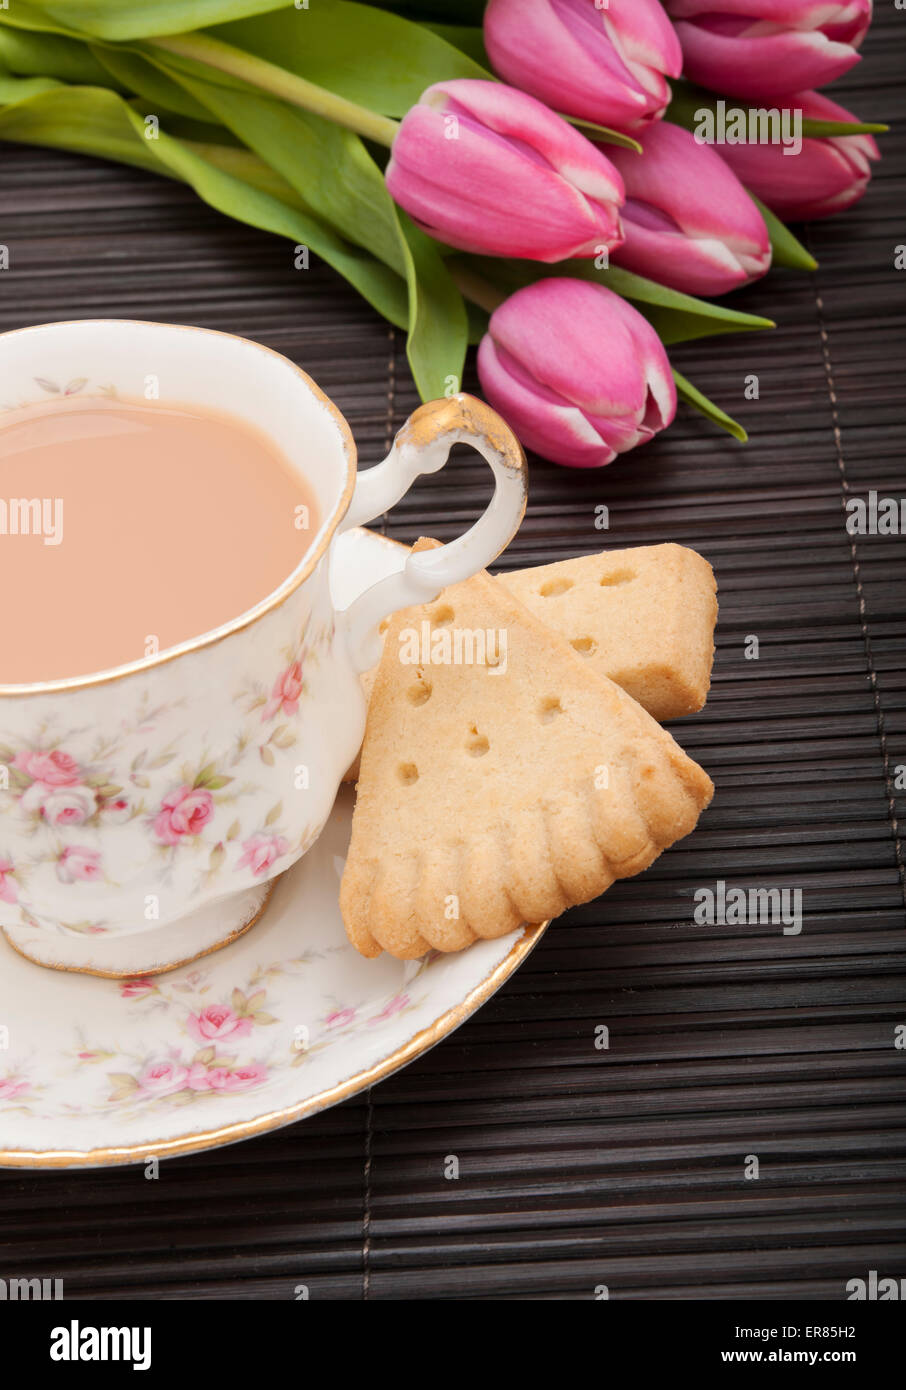 Gros plan d'une tasse de thé avec du lait et d'une assiette de biscuits sablés sur une table Banque D'Images